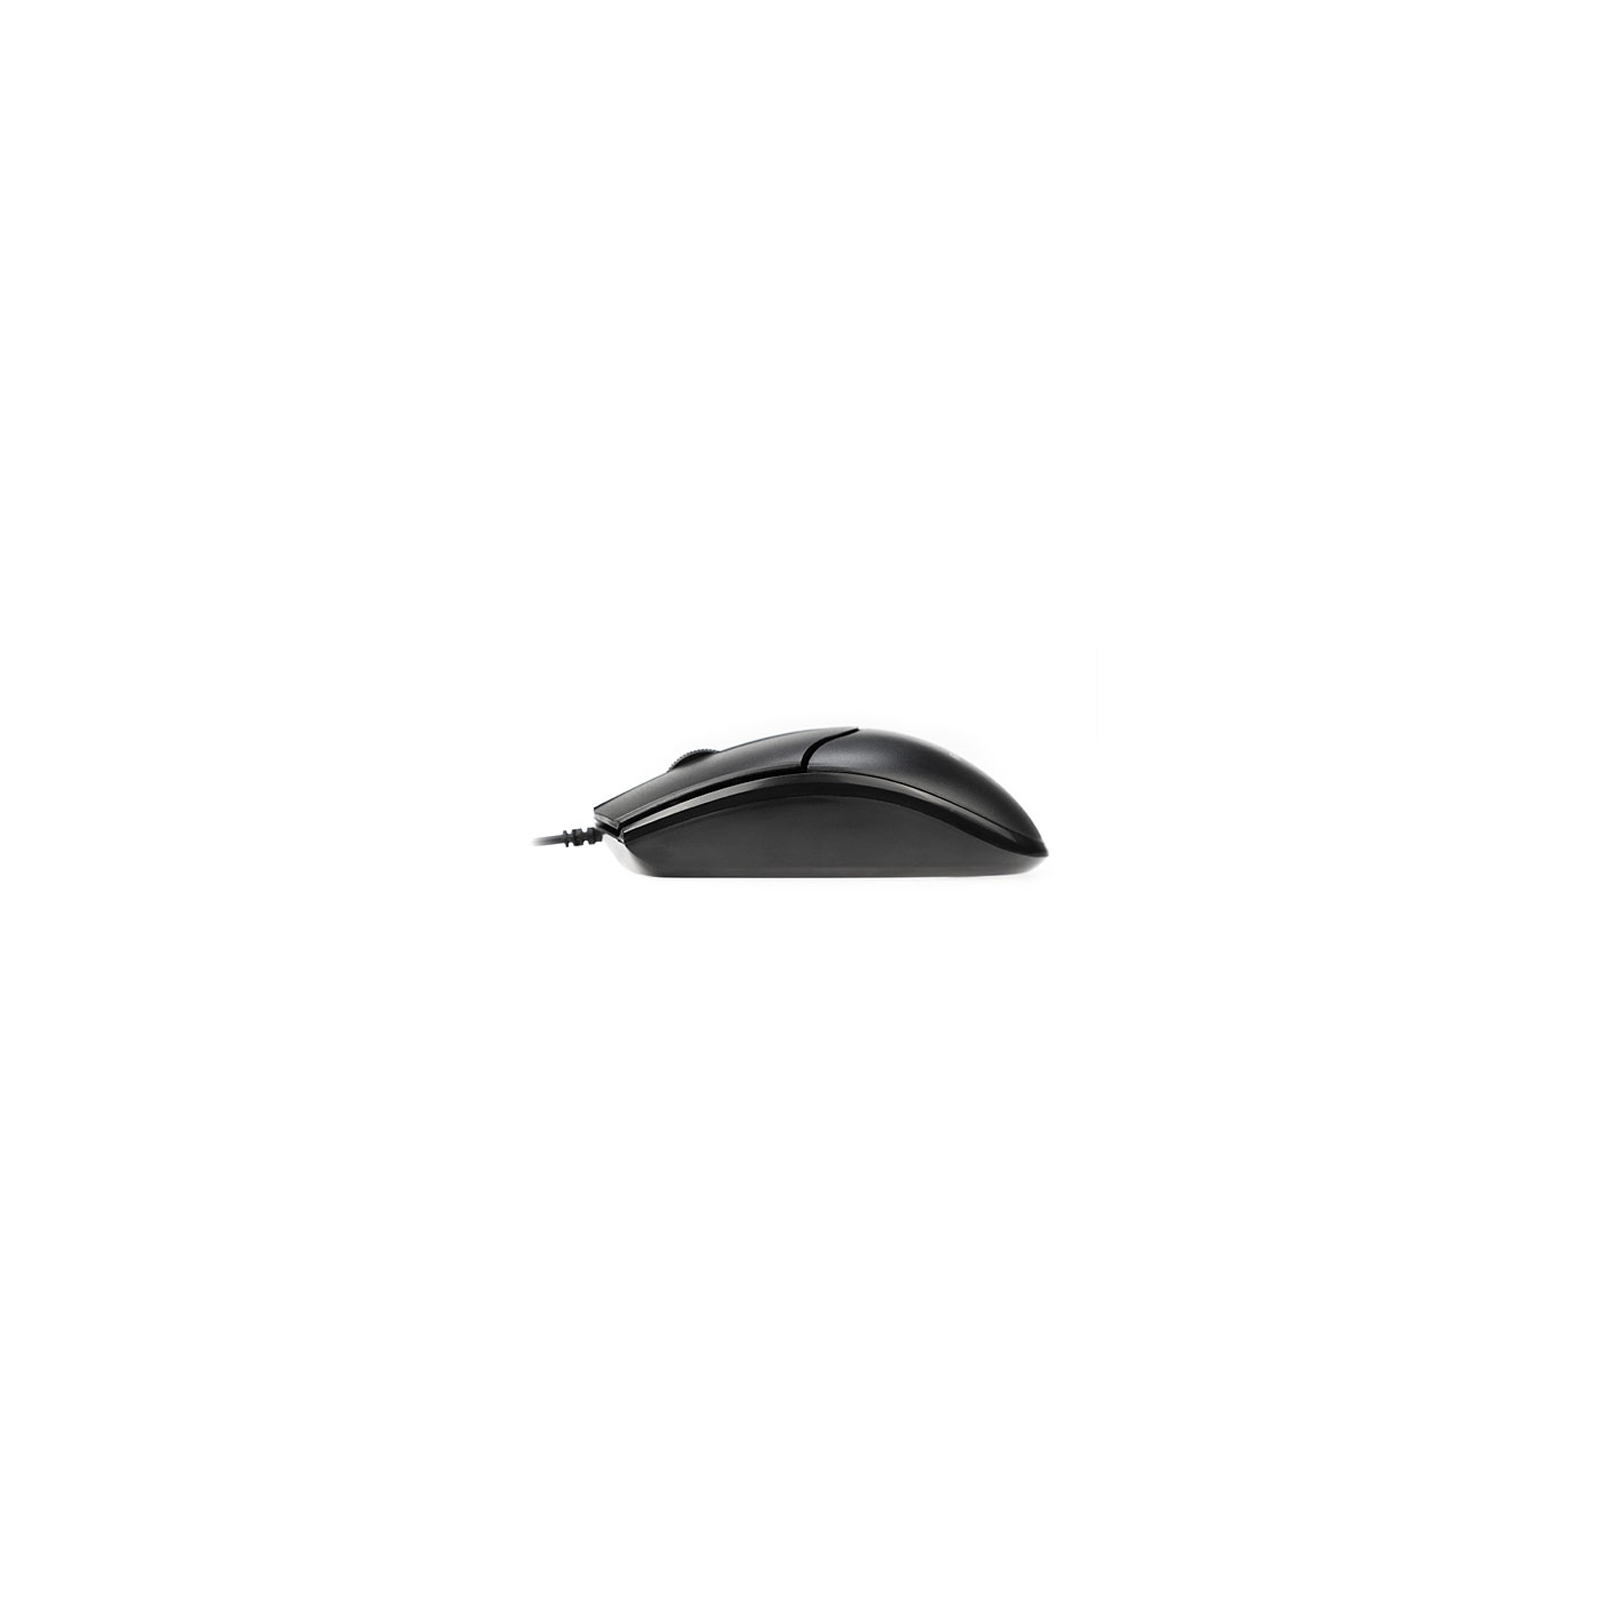 Мышка REAL-EL RM-410 Silent Black изображение 5